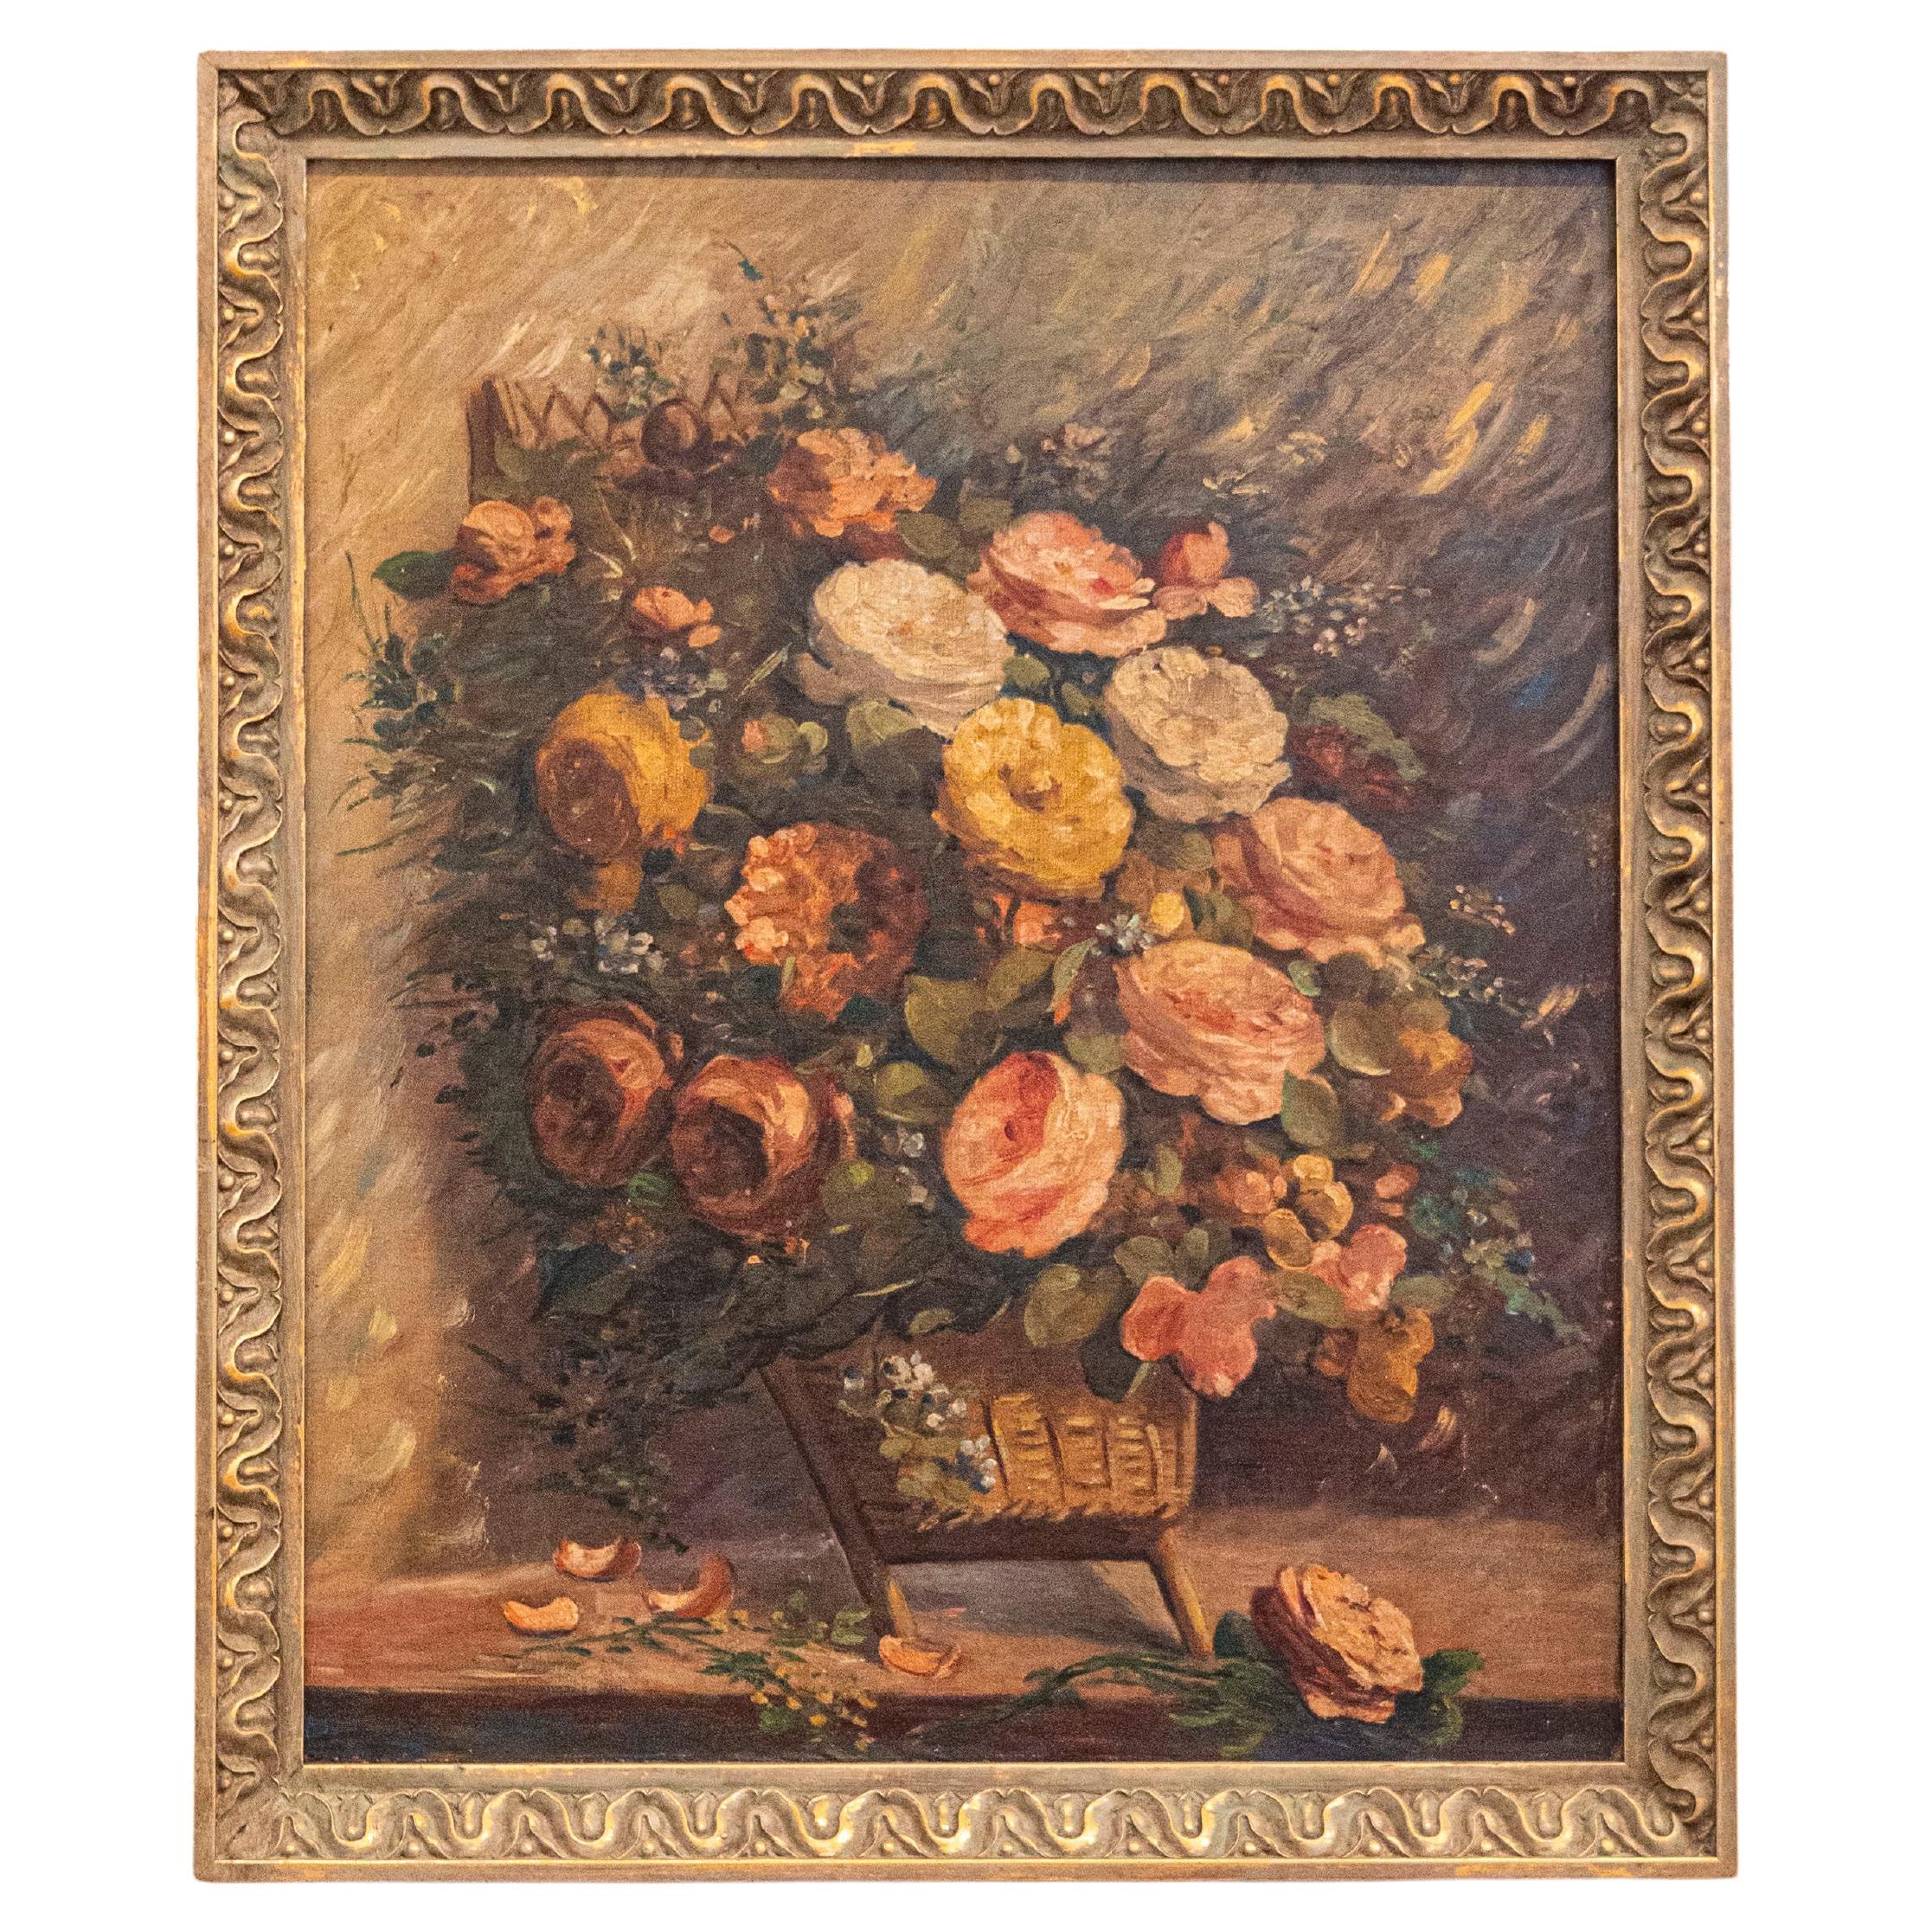 Huile sur toile française du 19ème siècle représentant des roses dans un panier